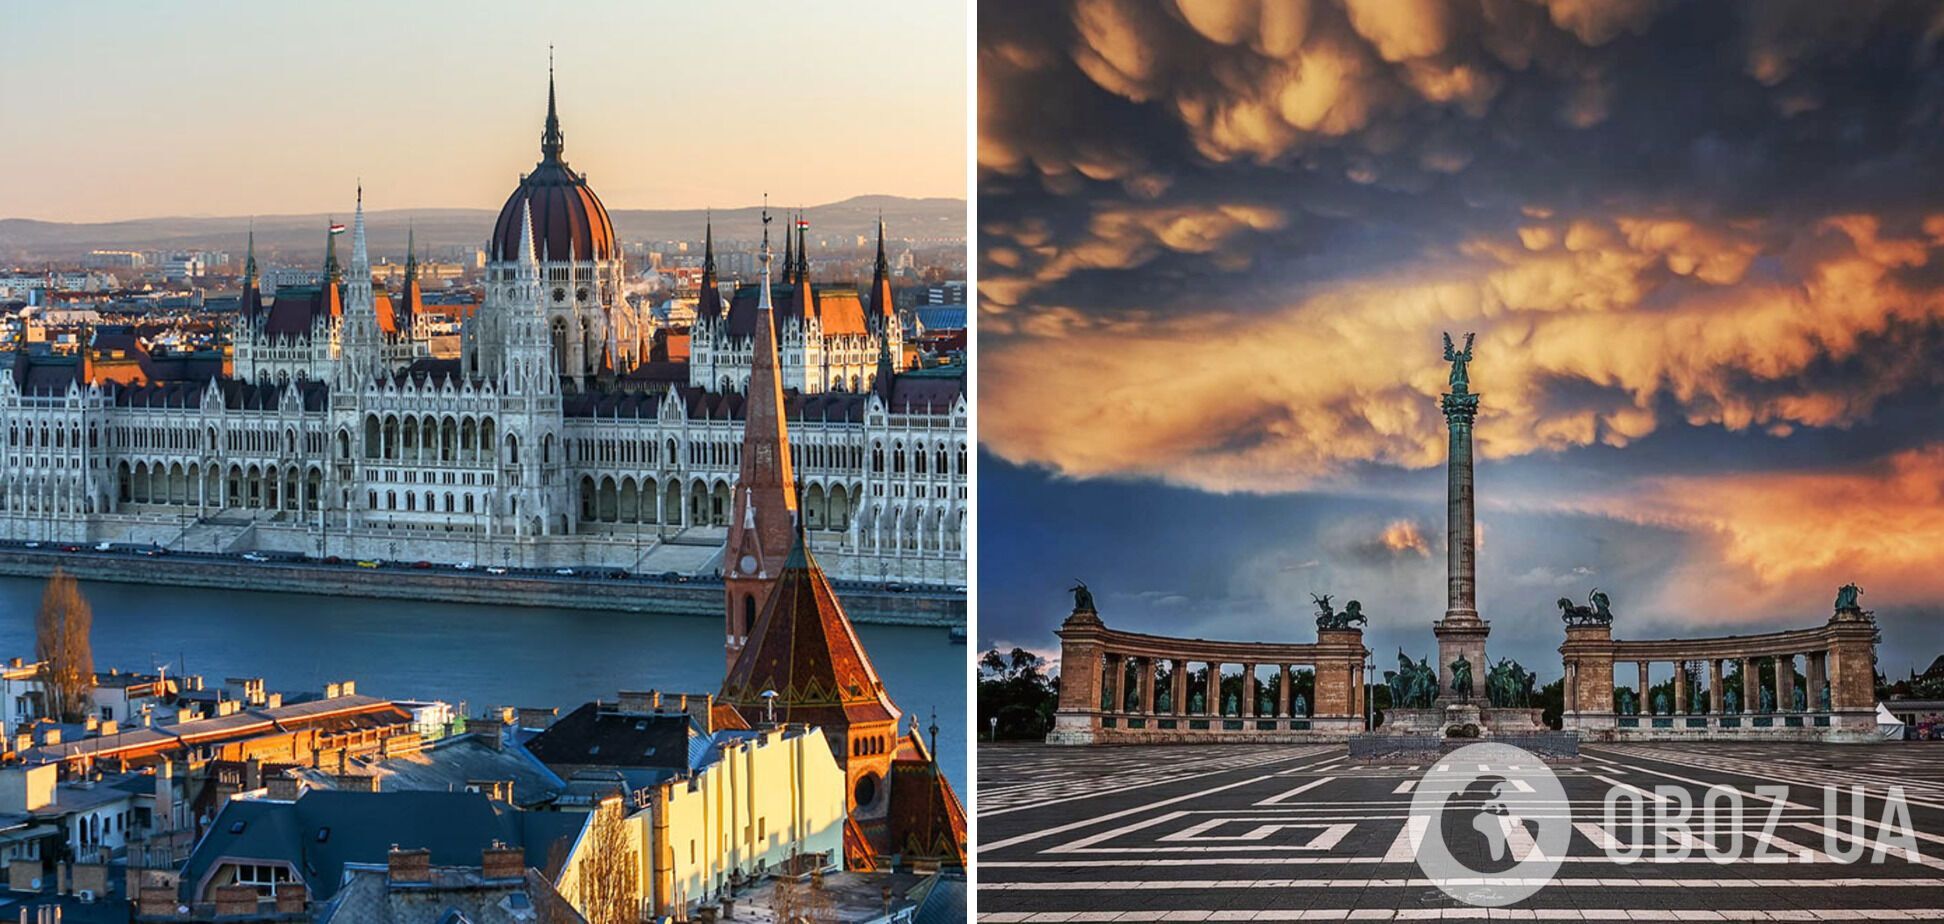 Будапешт также является известным туристическим центром.